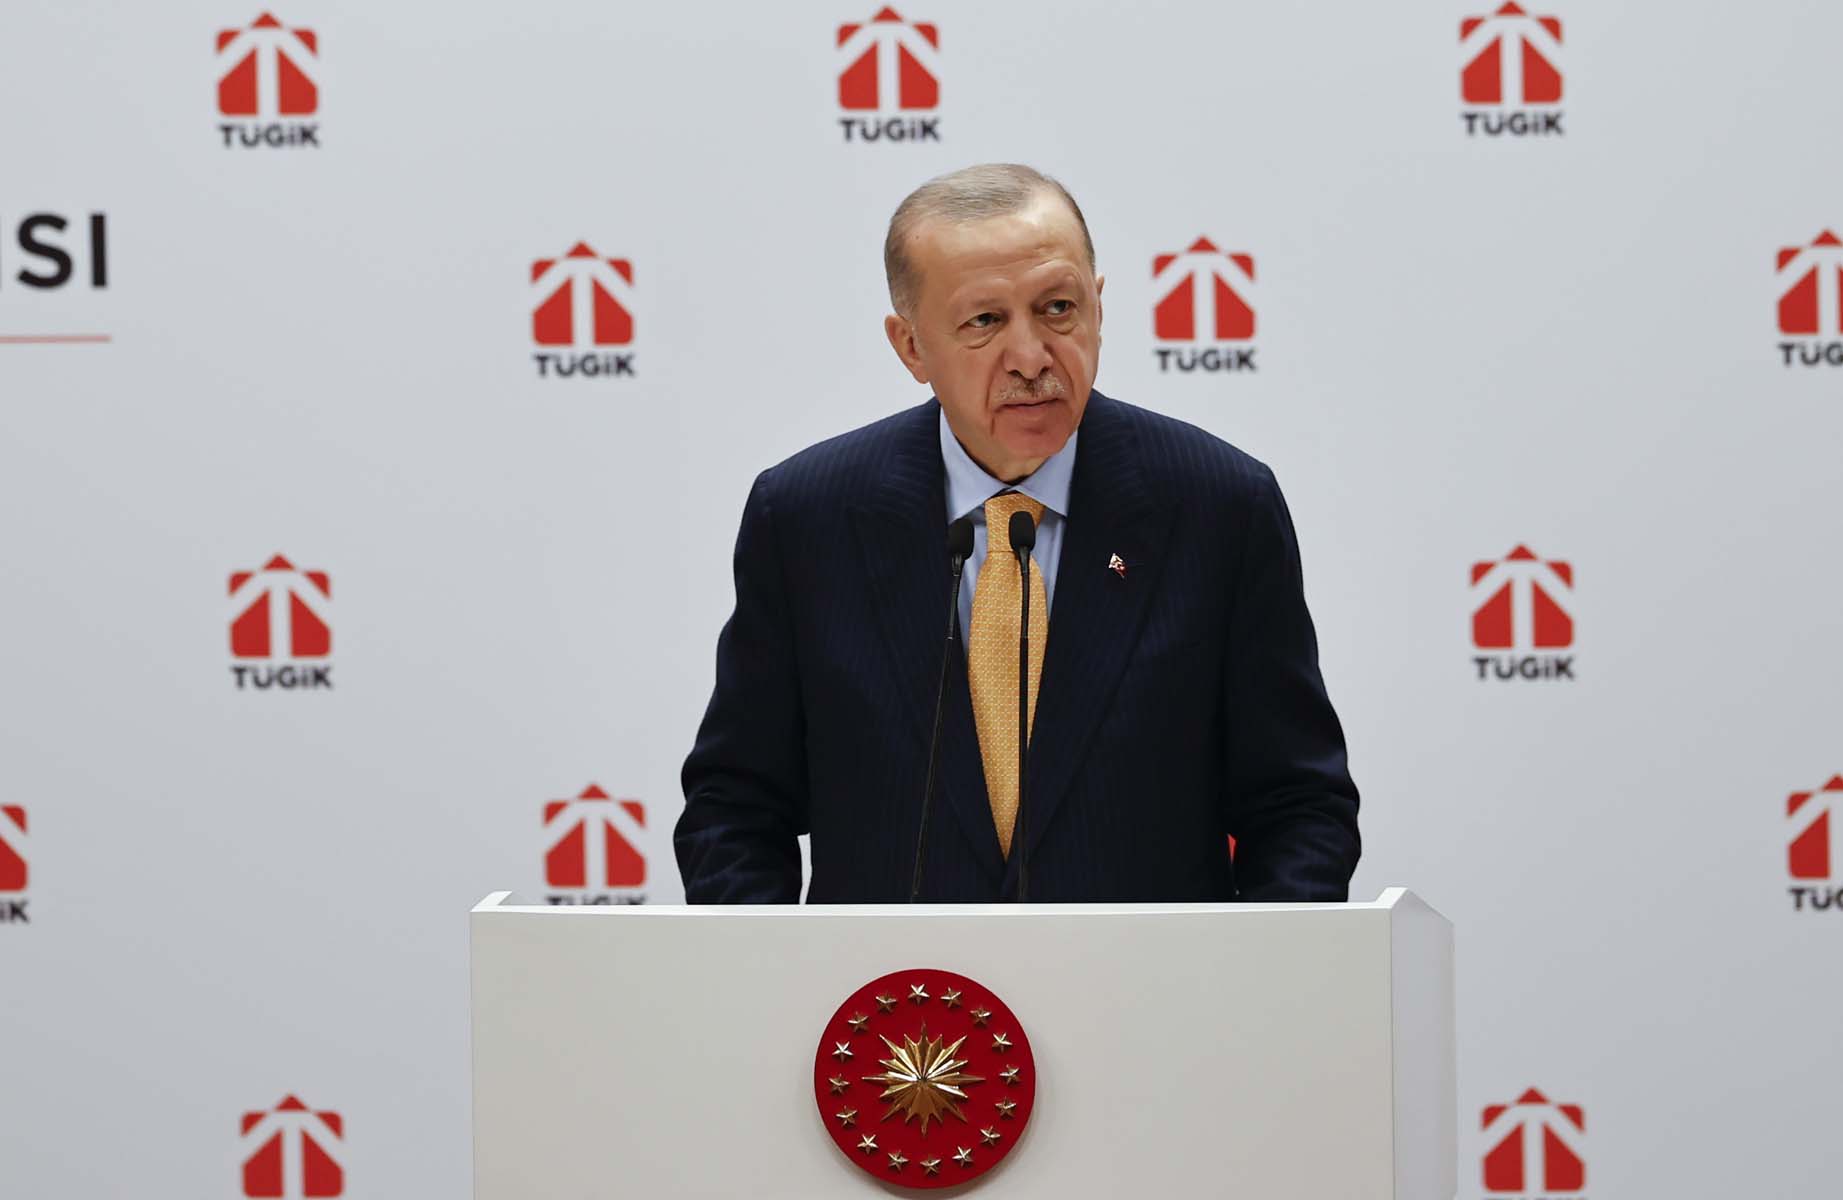 Cumhurbaşkanı Erdoğan, TÜGİK Genel Kurulu'nda konuştu: Yüksek enflasyon sarmalını bertaraf edeceğiz